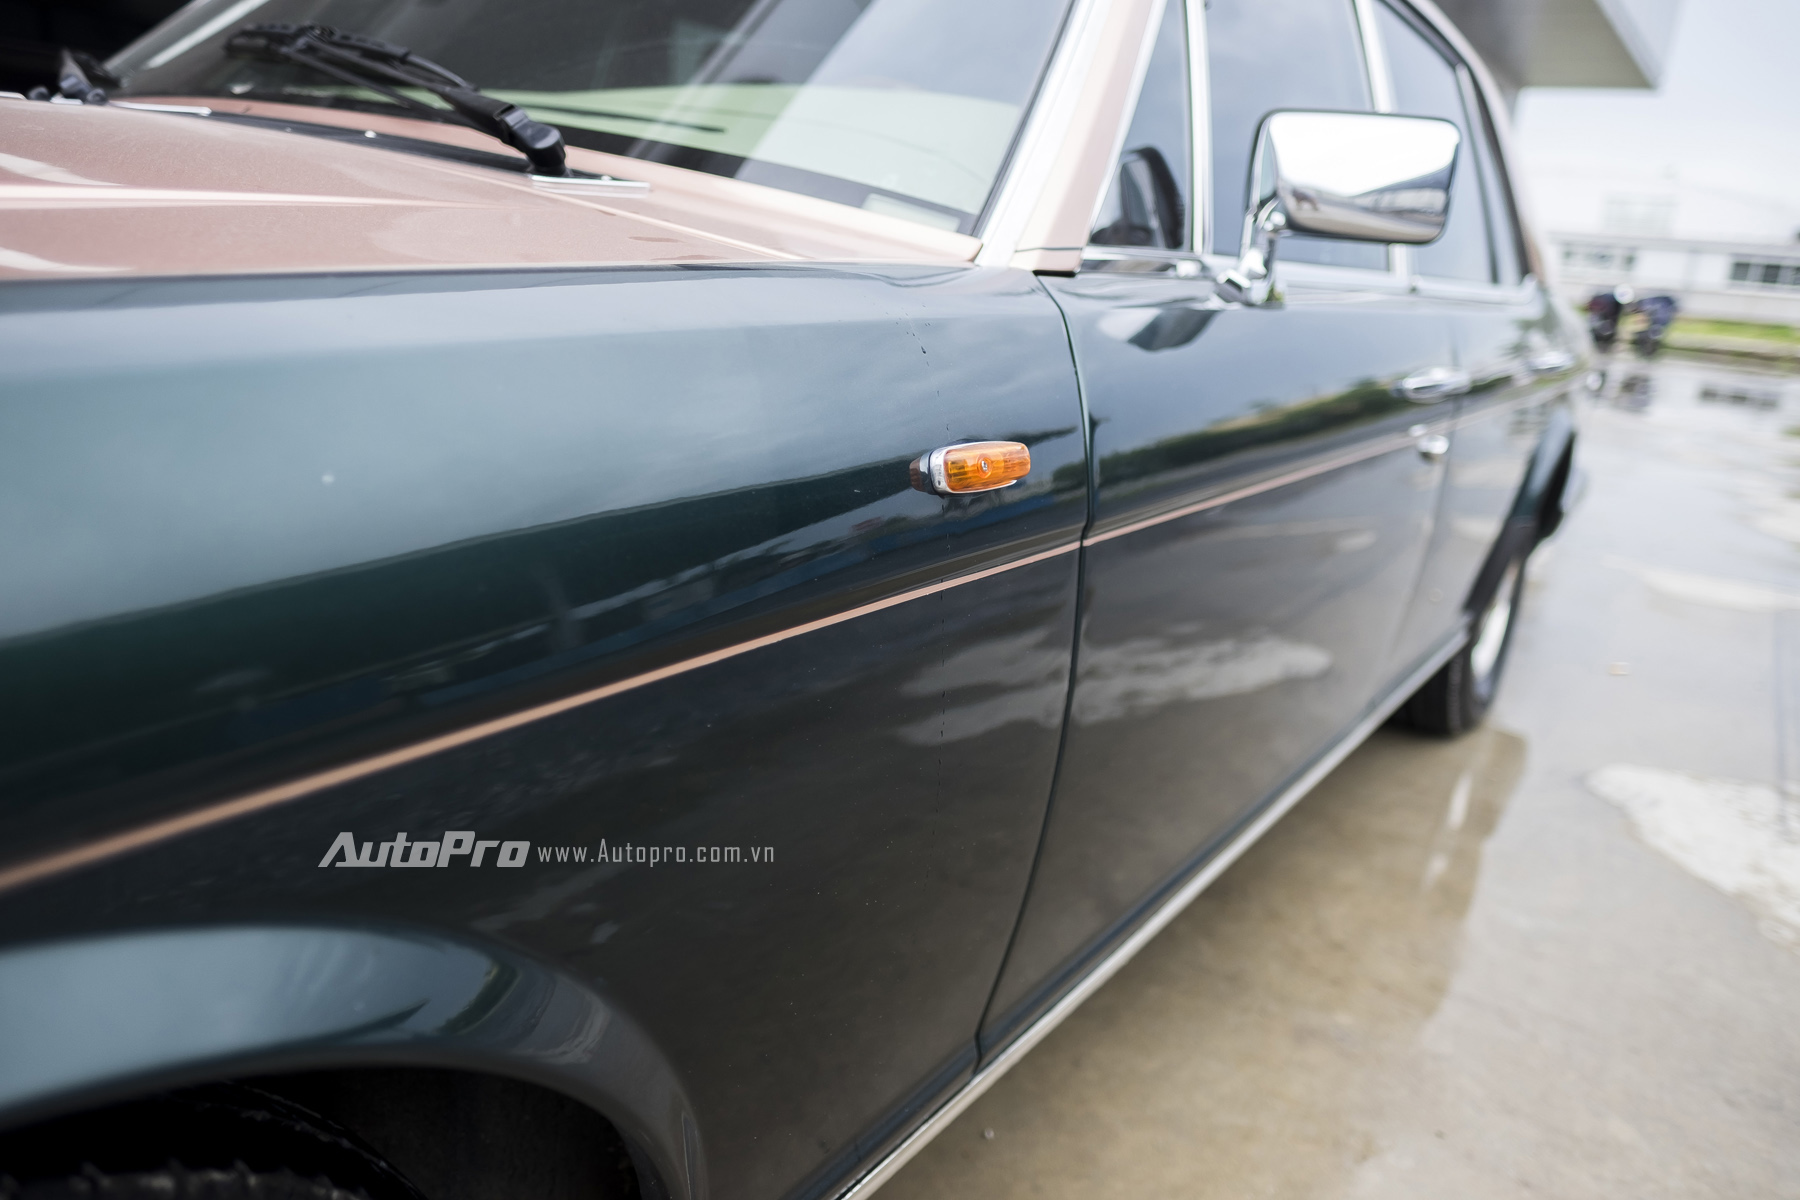 
Do đó, những chuyên gia kỹ thuật của Xưởng dịch vụ Rolls-Royce Motor Cars Service Hanoi đã phải từng bước khôi phục lại chiếc xe. Ban đầu là toàn bộ phần khung xe, thân vỏ được xử lý để trả chiếc xe về đúng với nguyên bản. Sau đó người chủ của chiếc xe đã lựa chọn màu sơn theo ý mình để phủ lên chiếc xe Rolls-Royce Silver Spirit 1982 theo đúng quy trình chính hãng.
